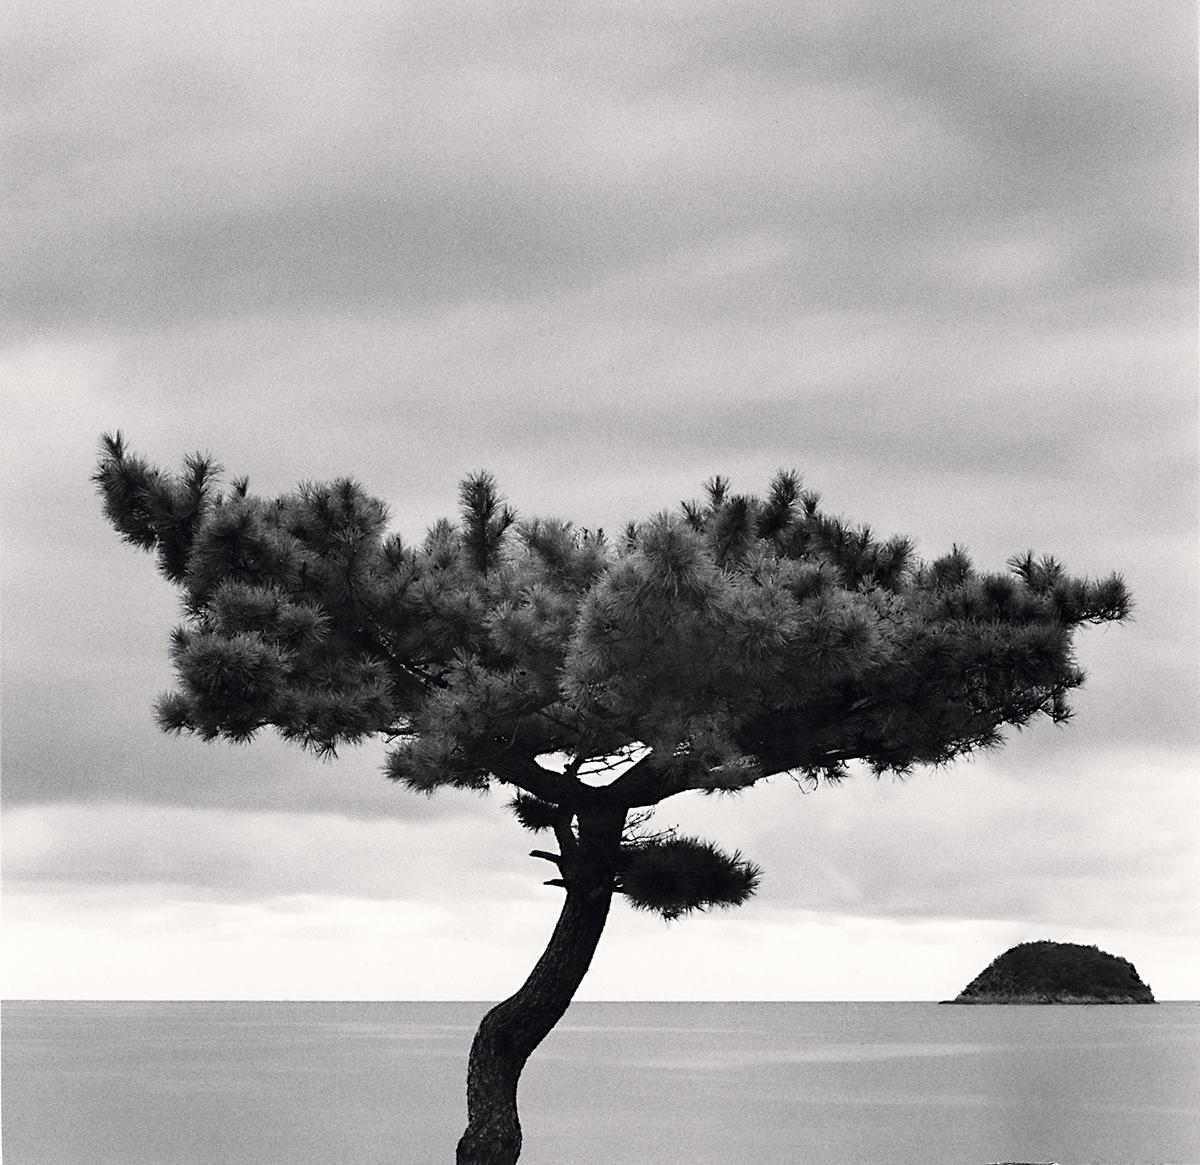 Pine Tree and Nago Island, Tsuda, Shikoku, Japan von Michael Kenna zeigt eine einsame Kiefer, die vor dem Meer steht. Am Horizont erscheint eine kleine Insel, die die Form des Baumes nachahmt. 

Pine Tree and Nago Island, Tsuda, Shikoku, Japan von